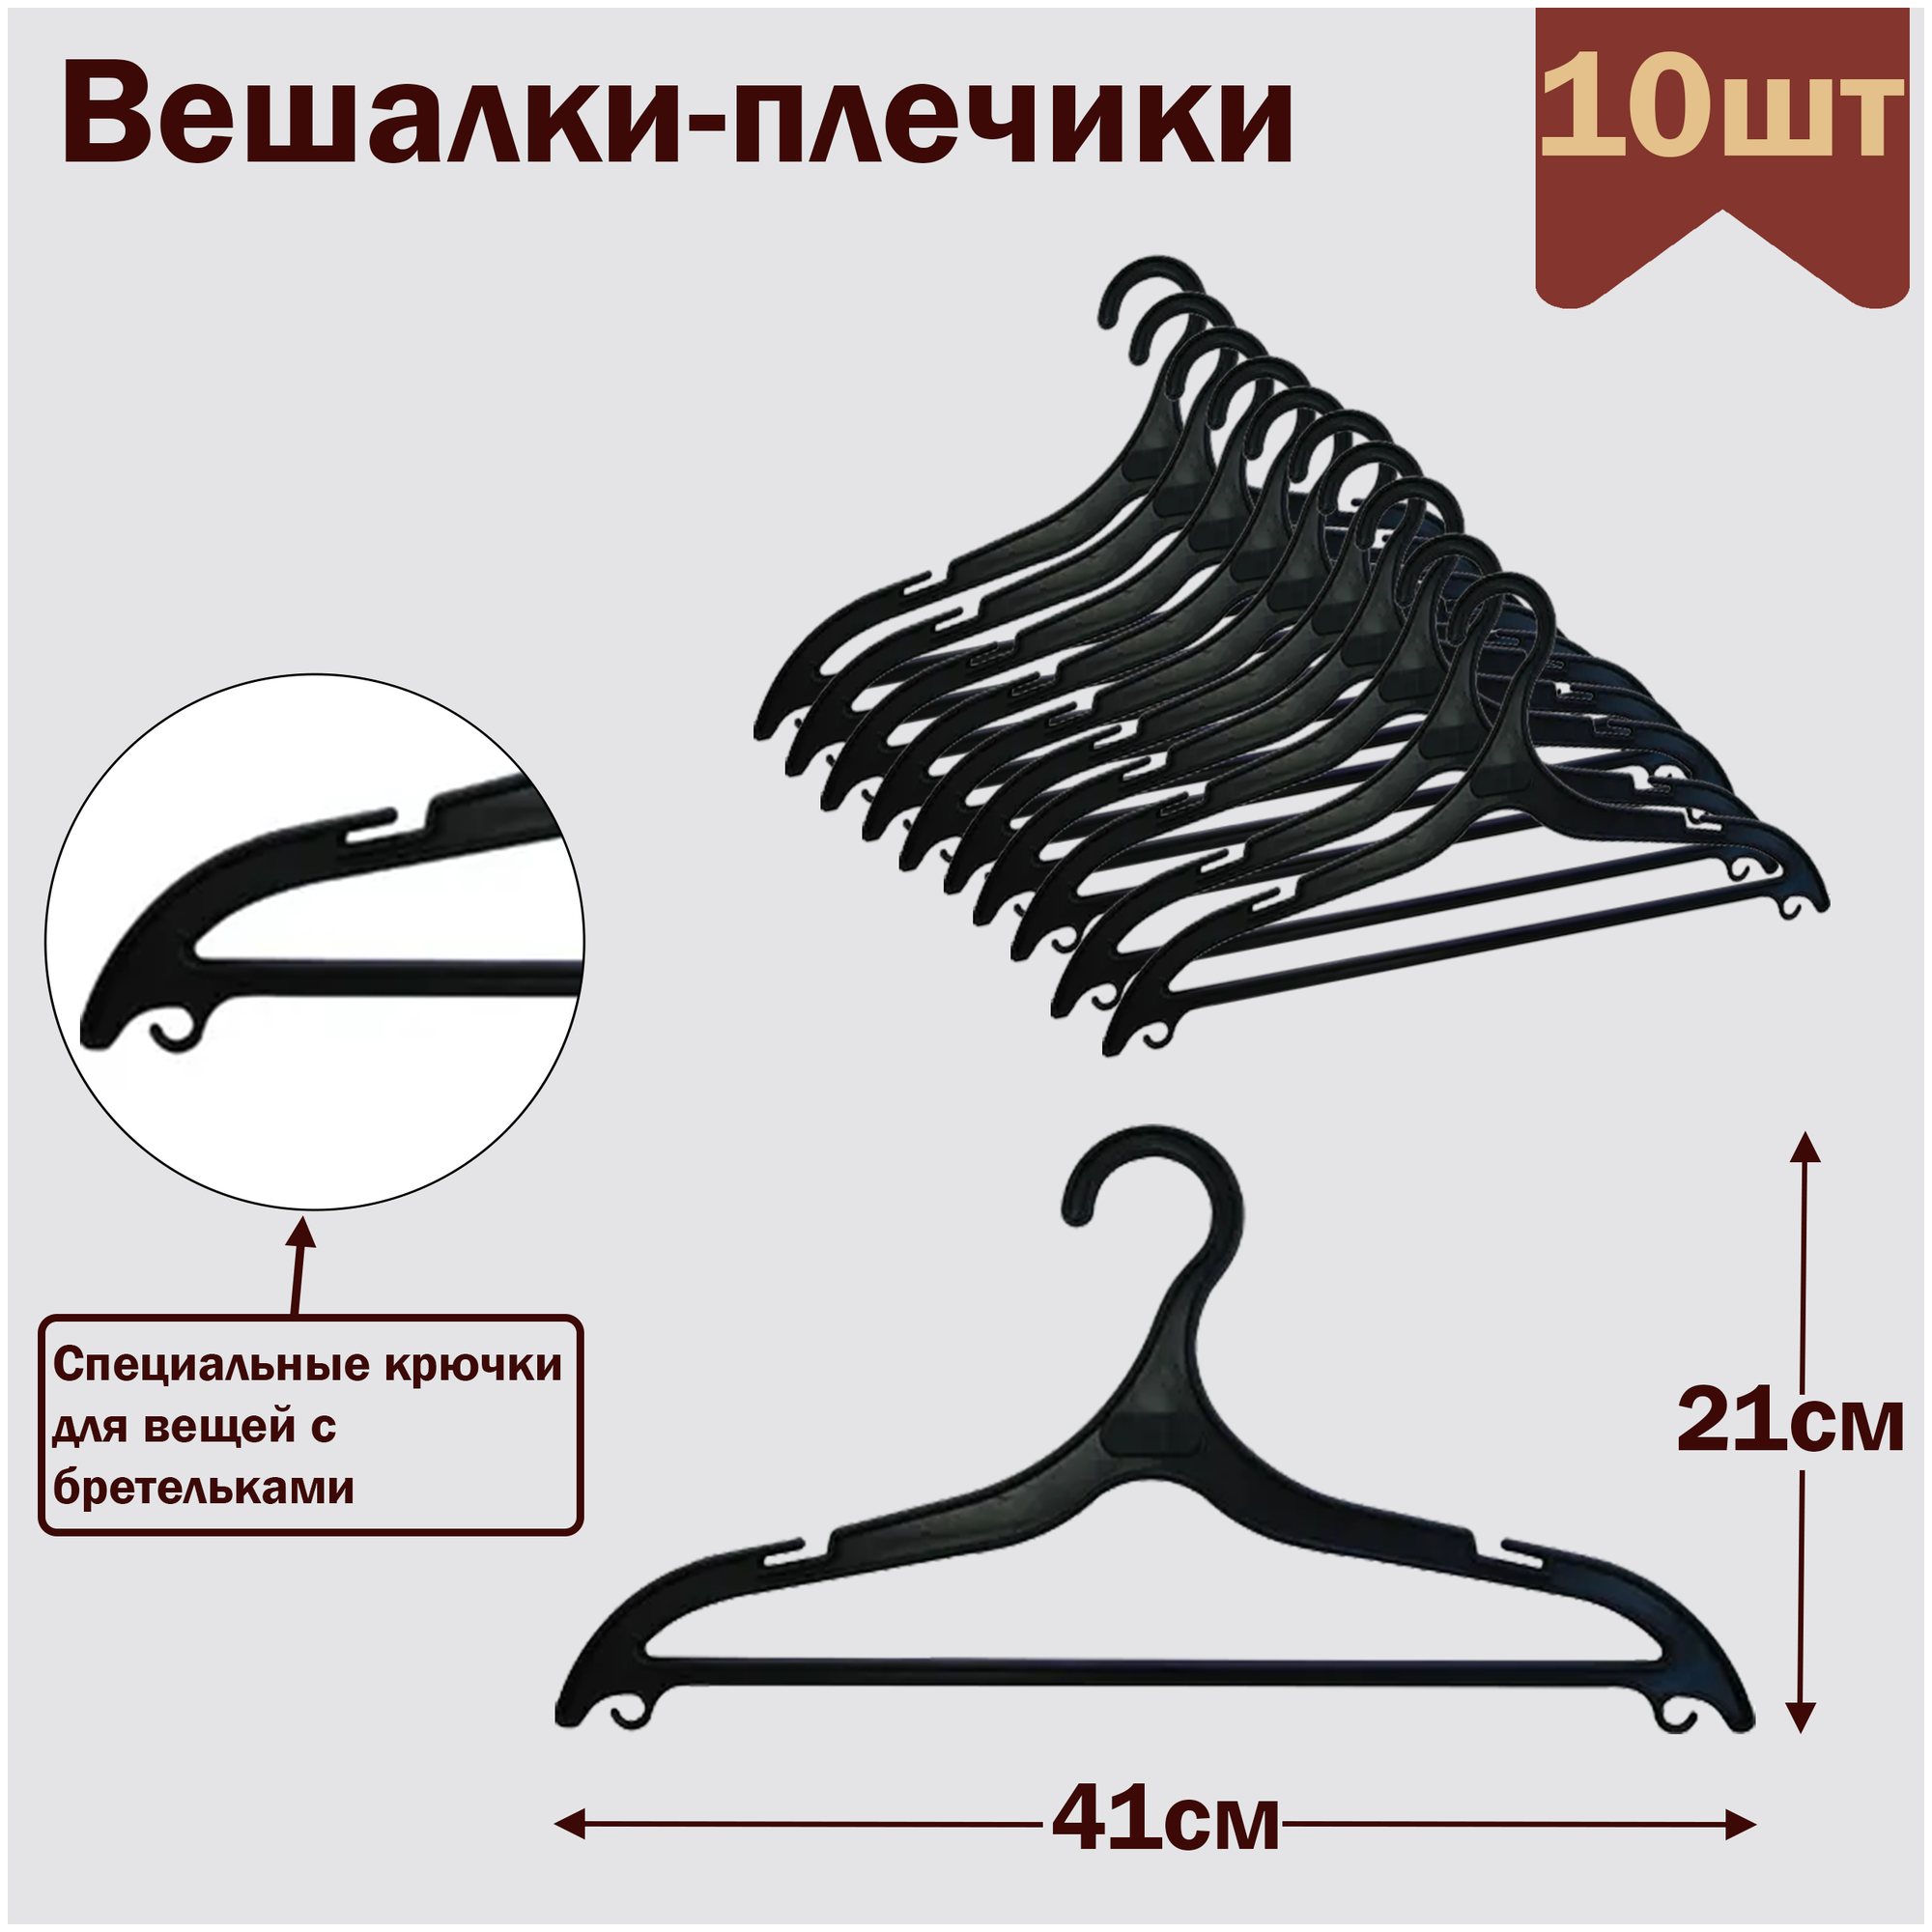 Вешалки-плечики для одежды пластиковые L-41см цвет черный комплект 10 штук